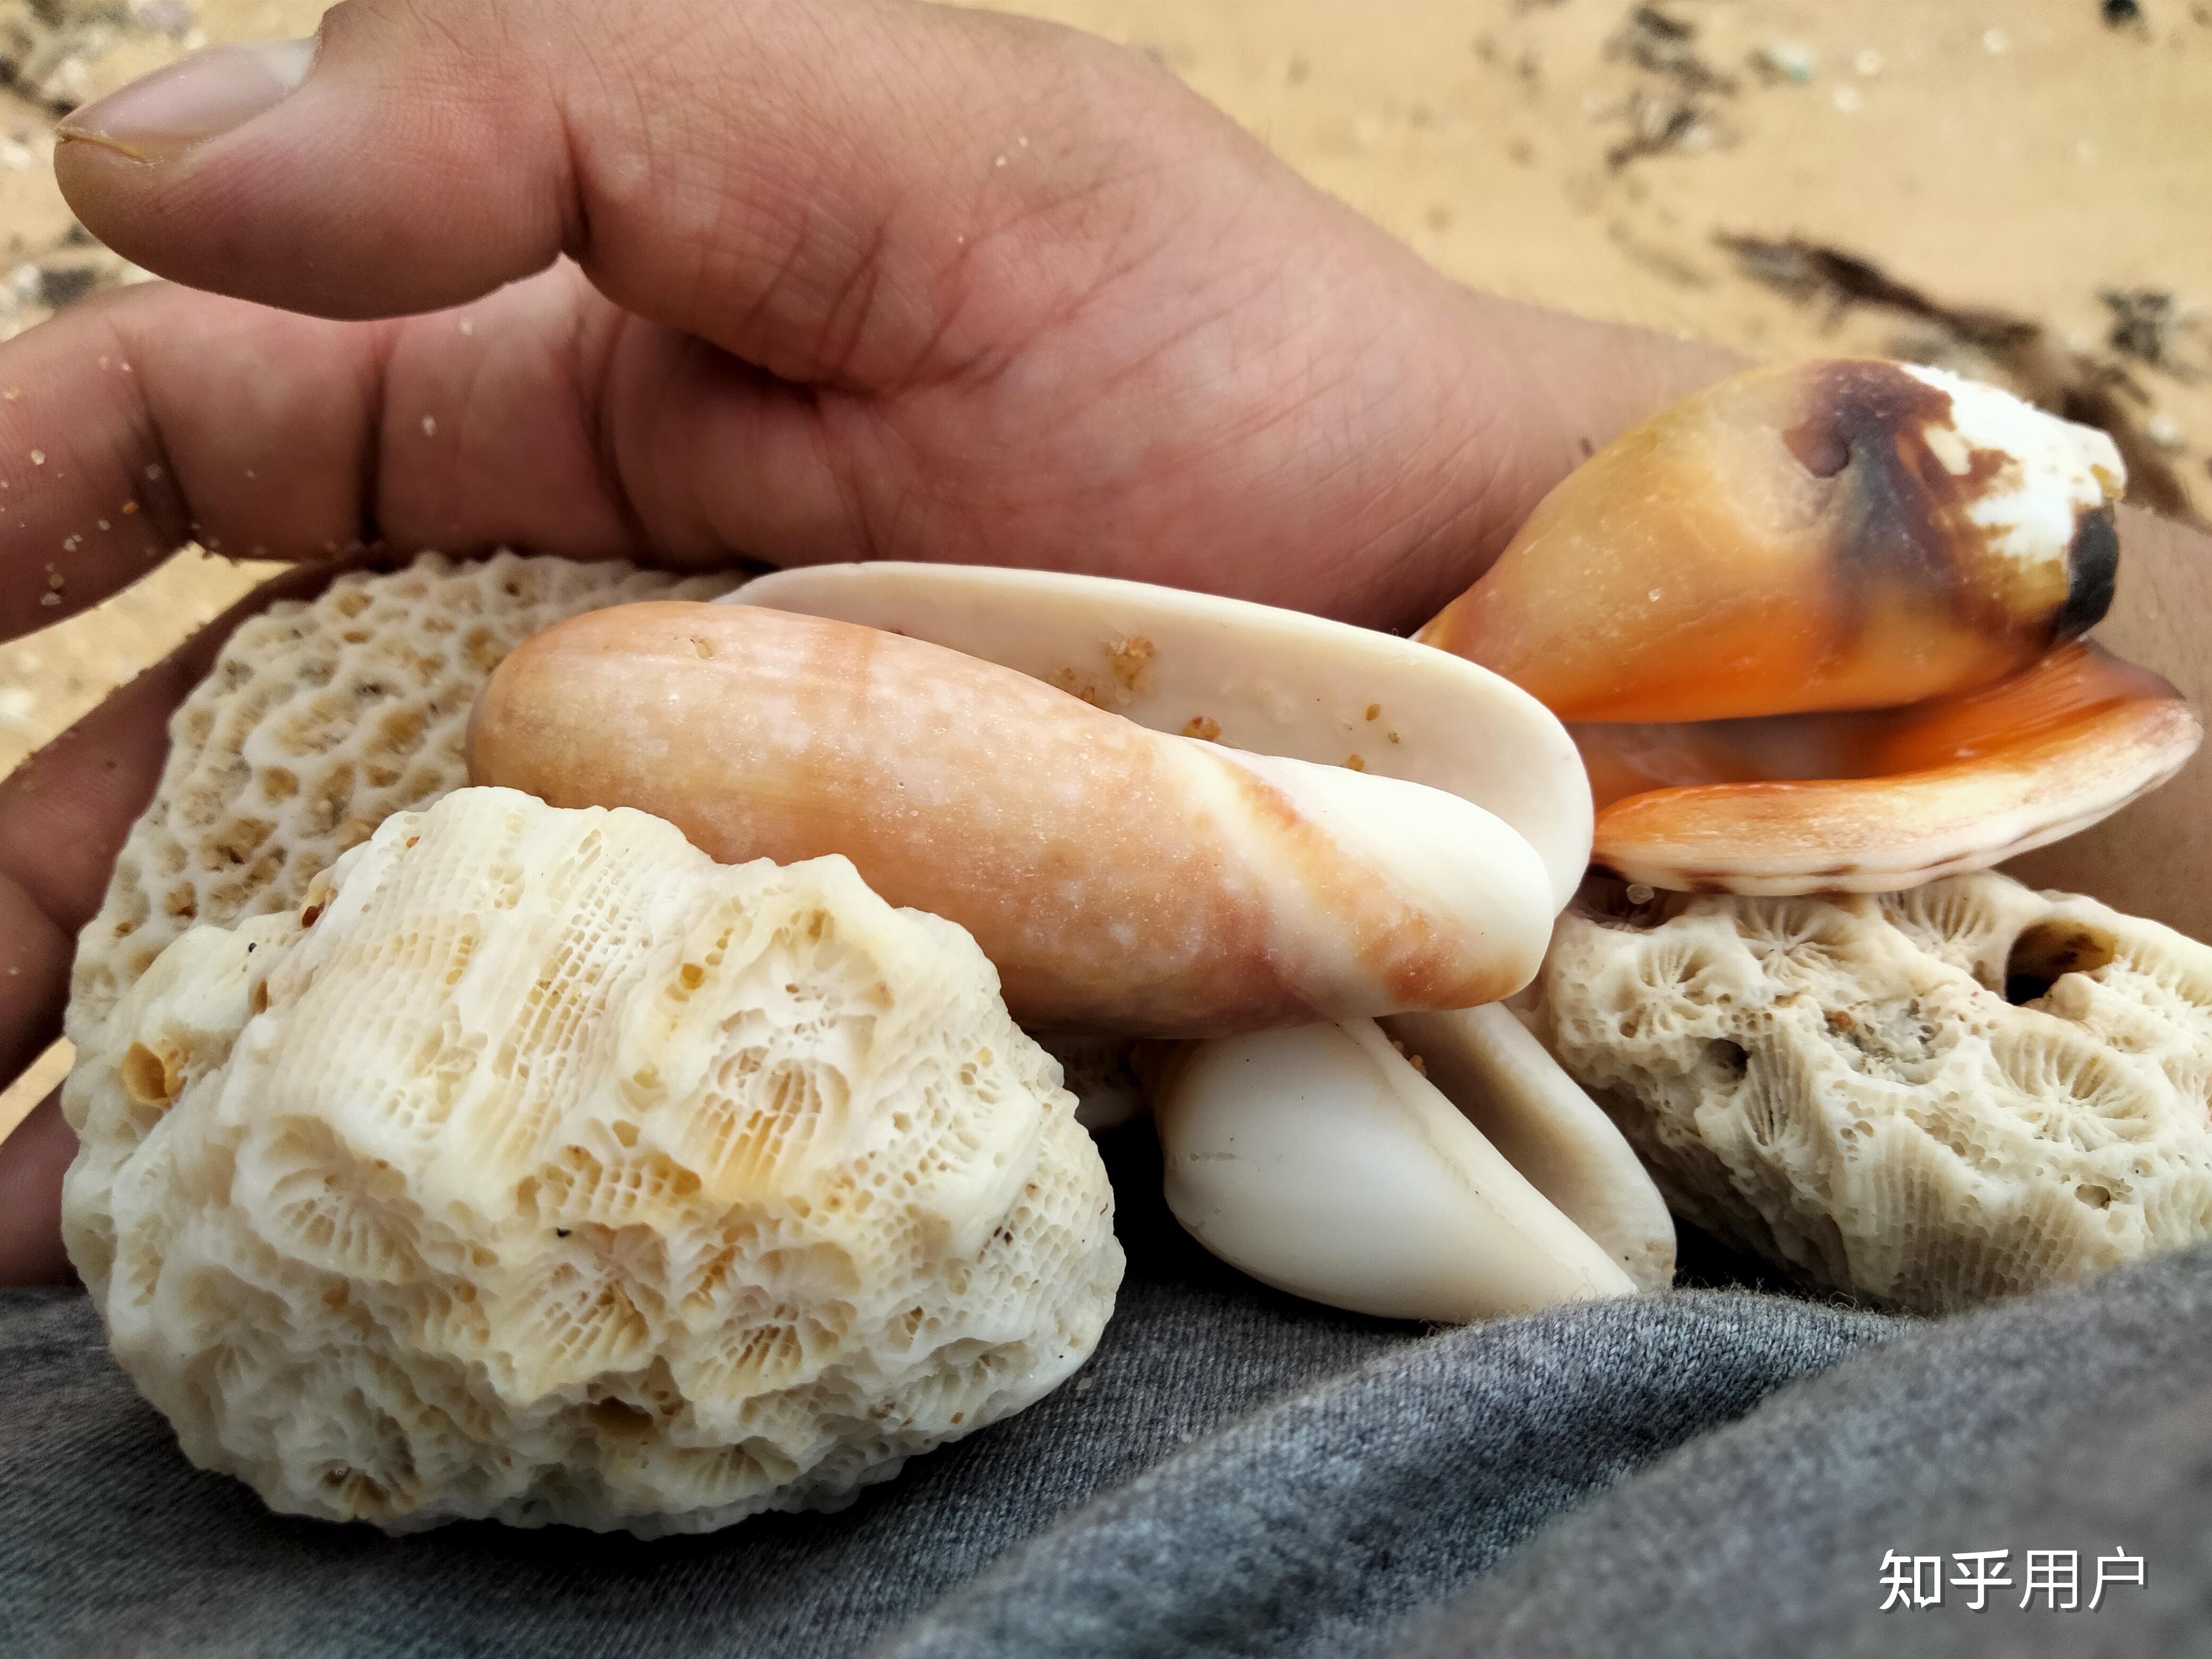 沙滩捡贝壳素材-沙滩捡贝壳图片-沙滩捡贝壳素材图片下载-第8页-觅知网